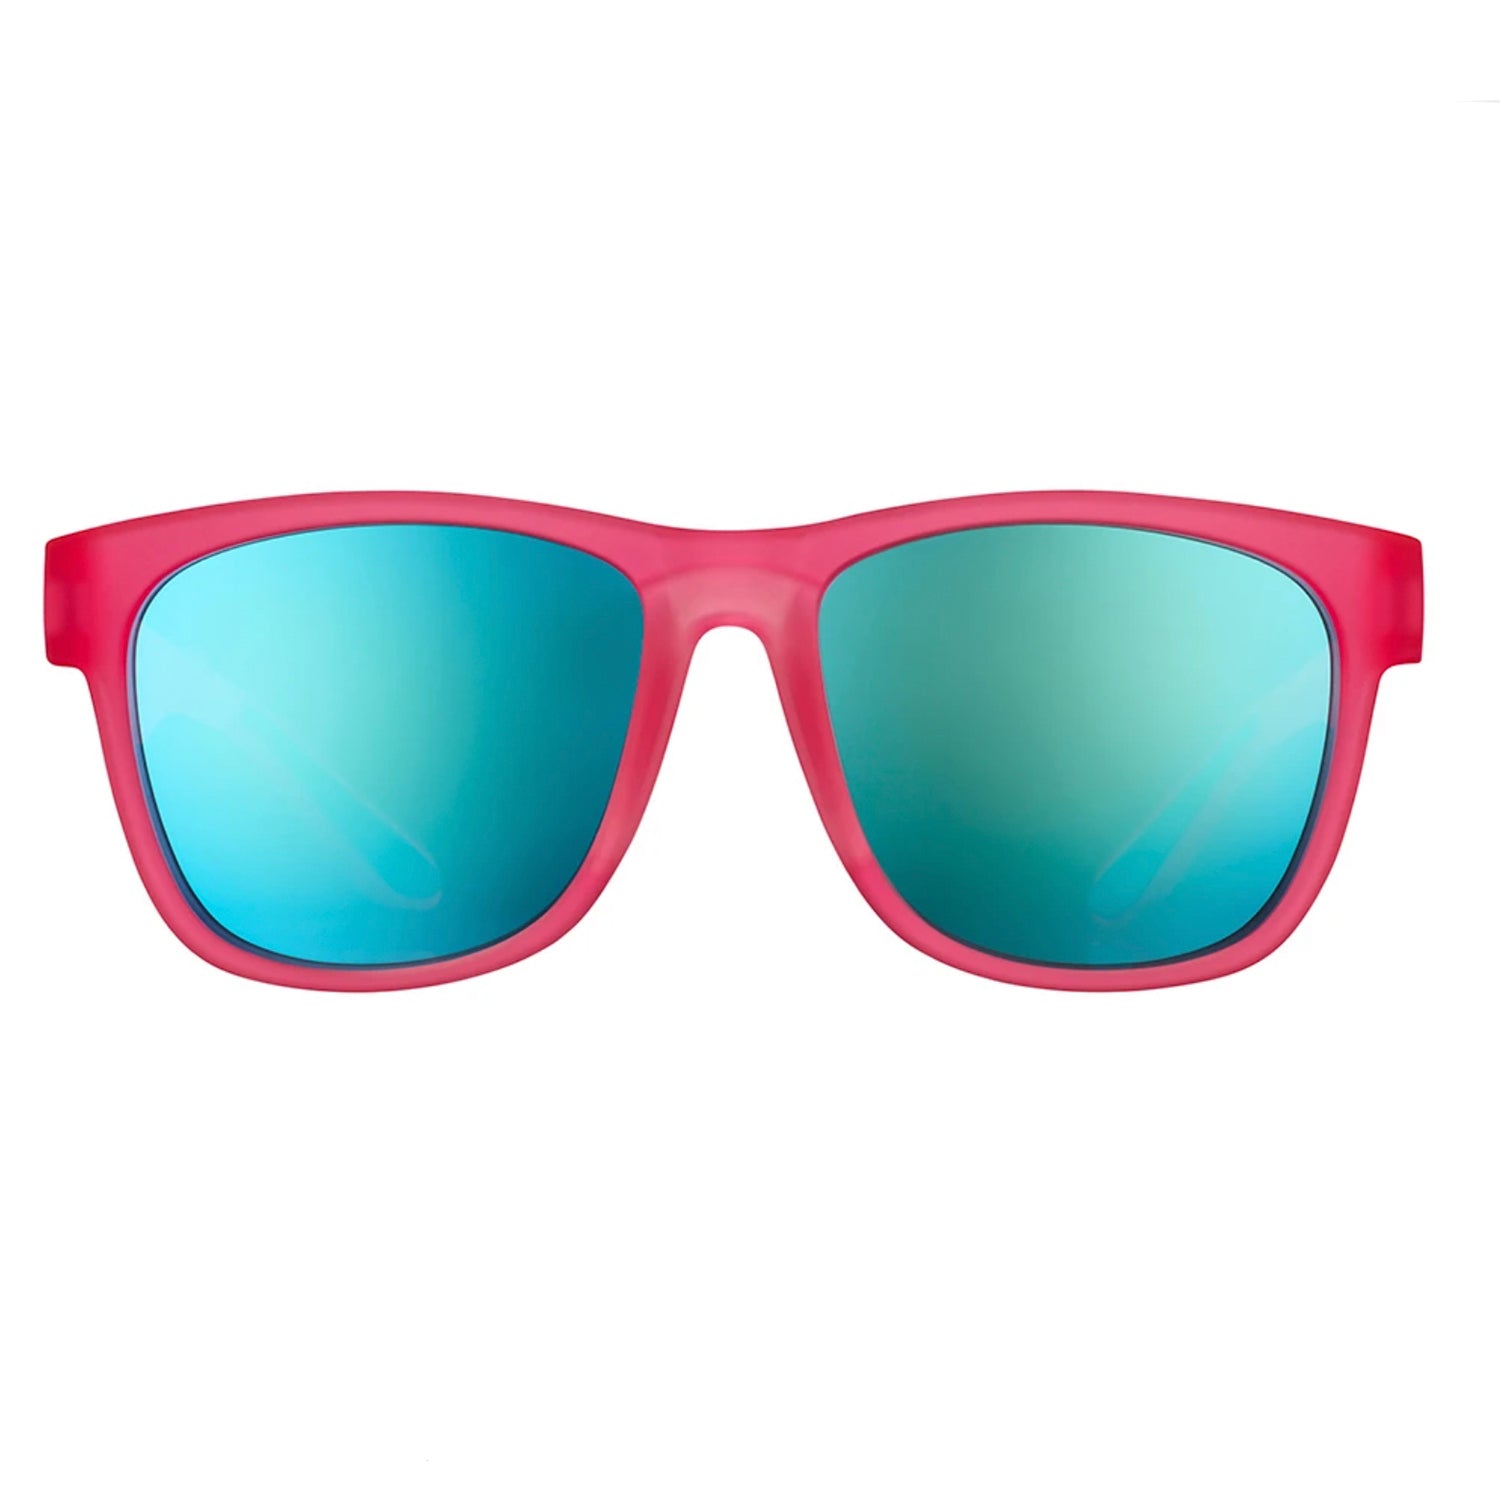 Goodr Sunglasses - Do You Even Pistol, Flamingo?